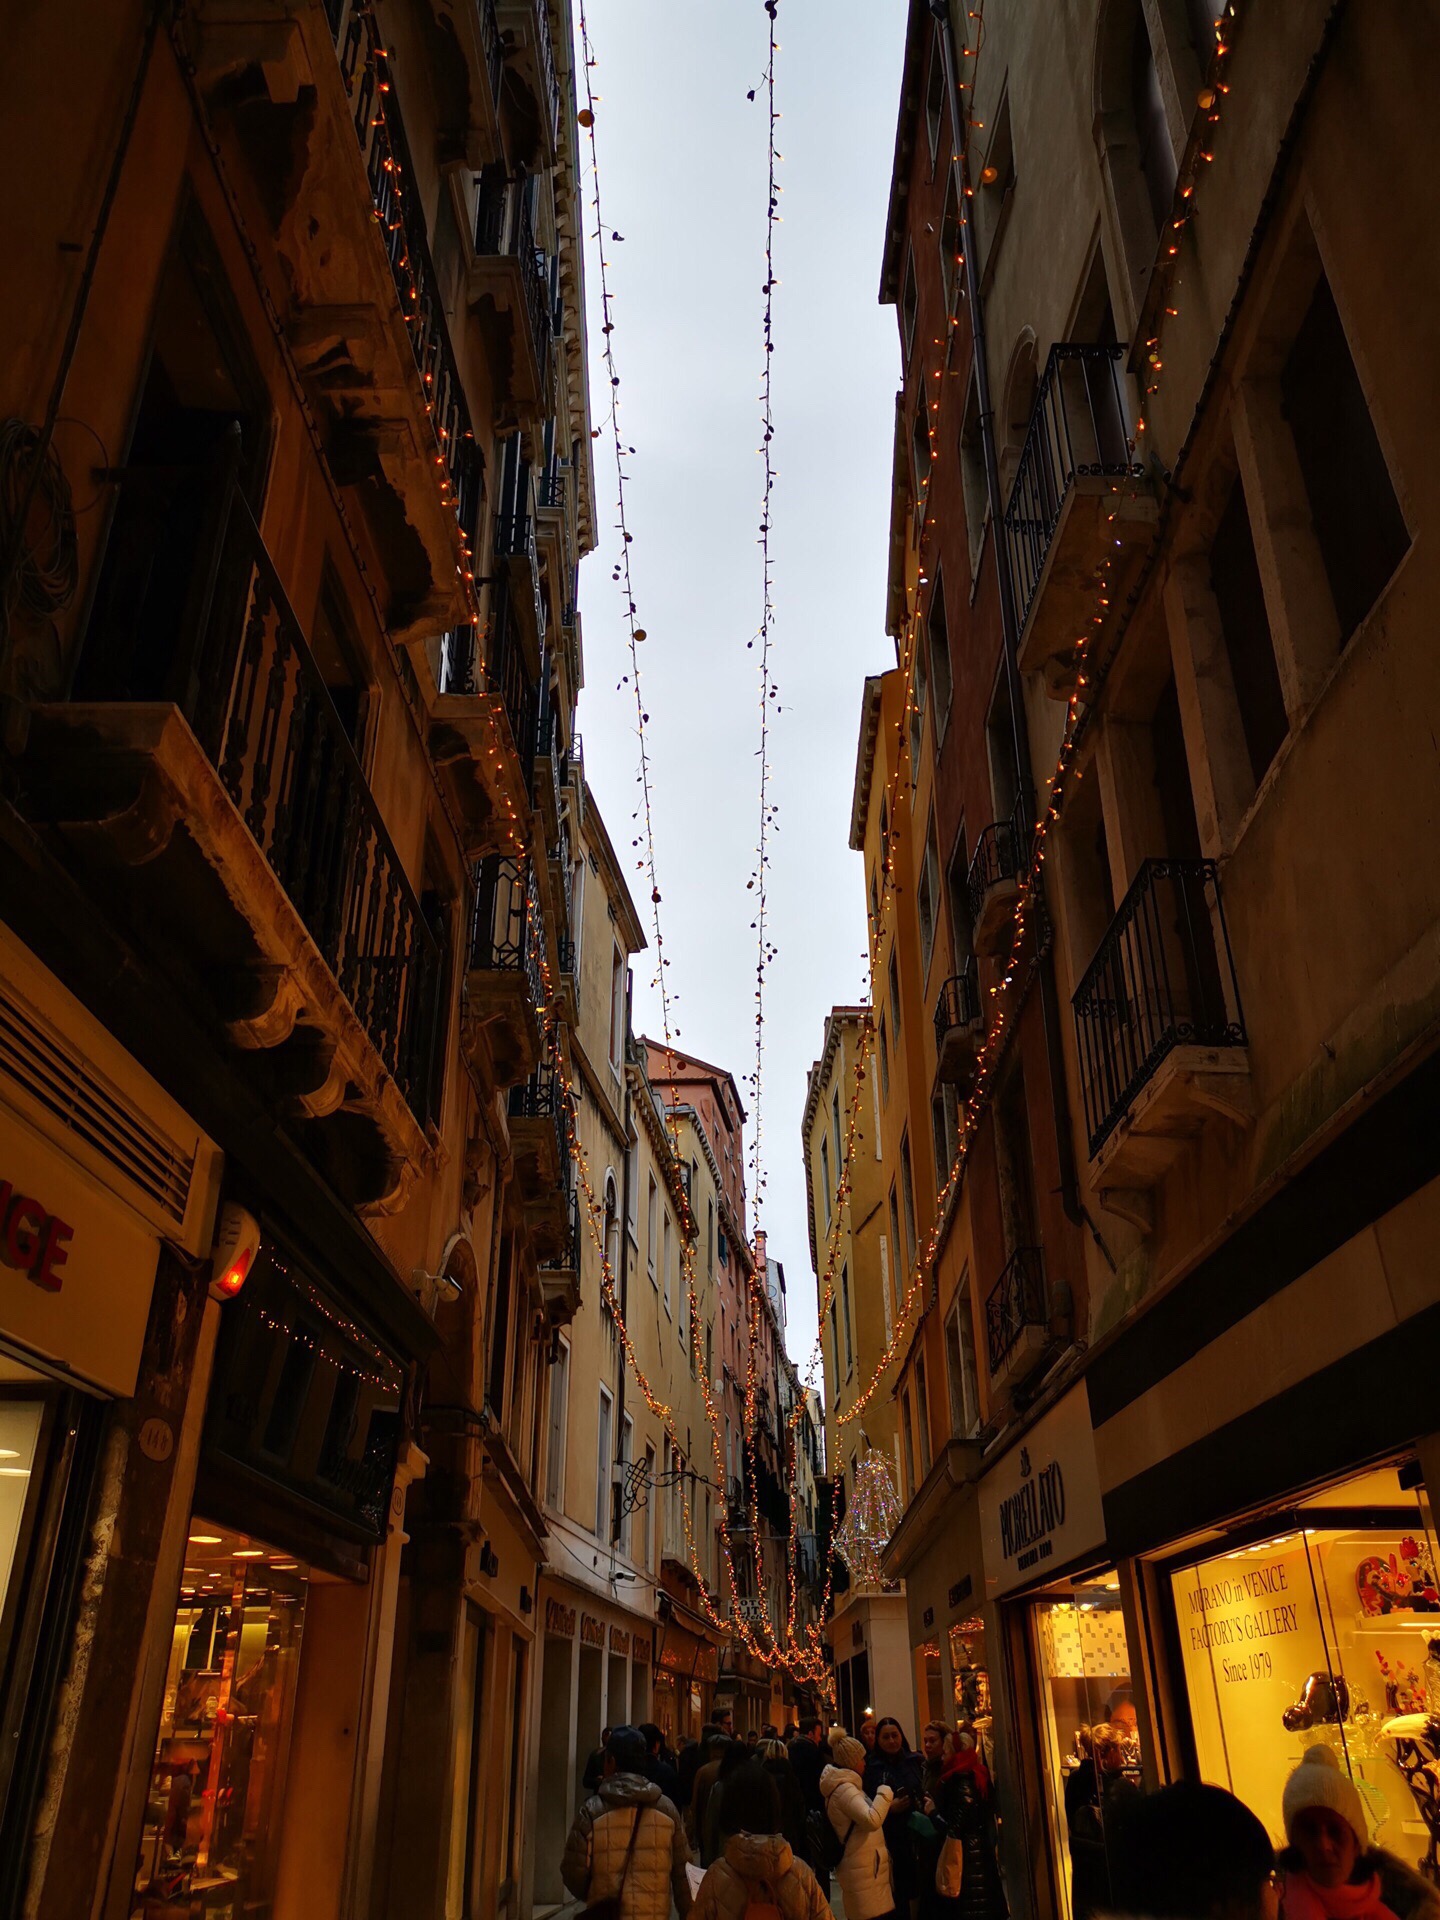 #亚平宁半岛之自由奔走#夜的威尼斯～       夜幕降临下的威尼斯，更是别有一番风情。威尼斯的小街